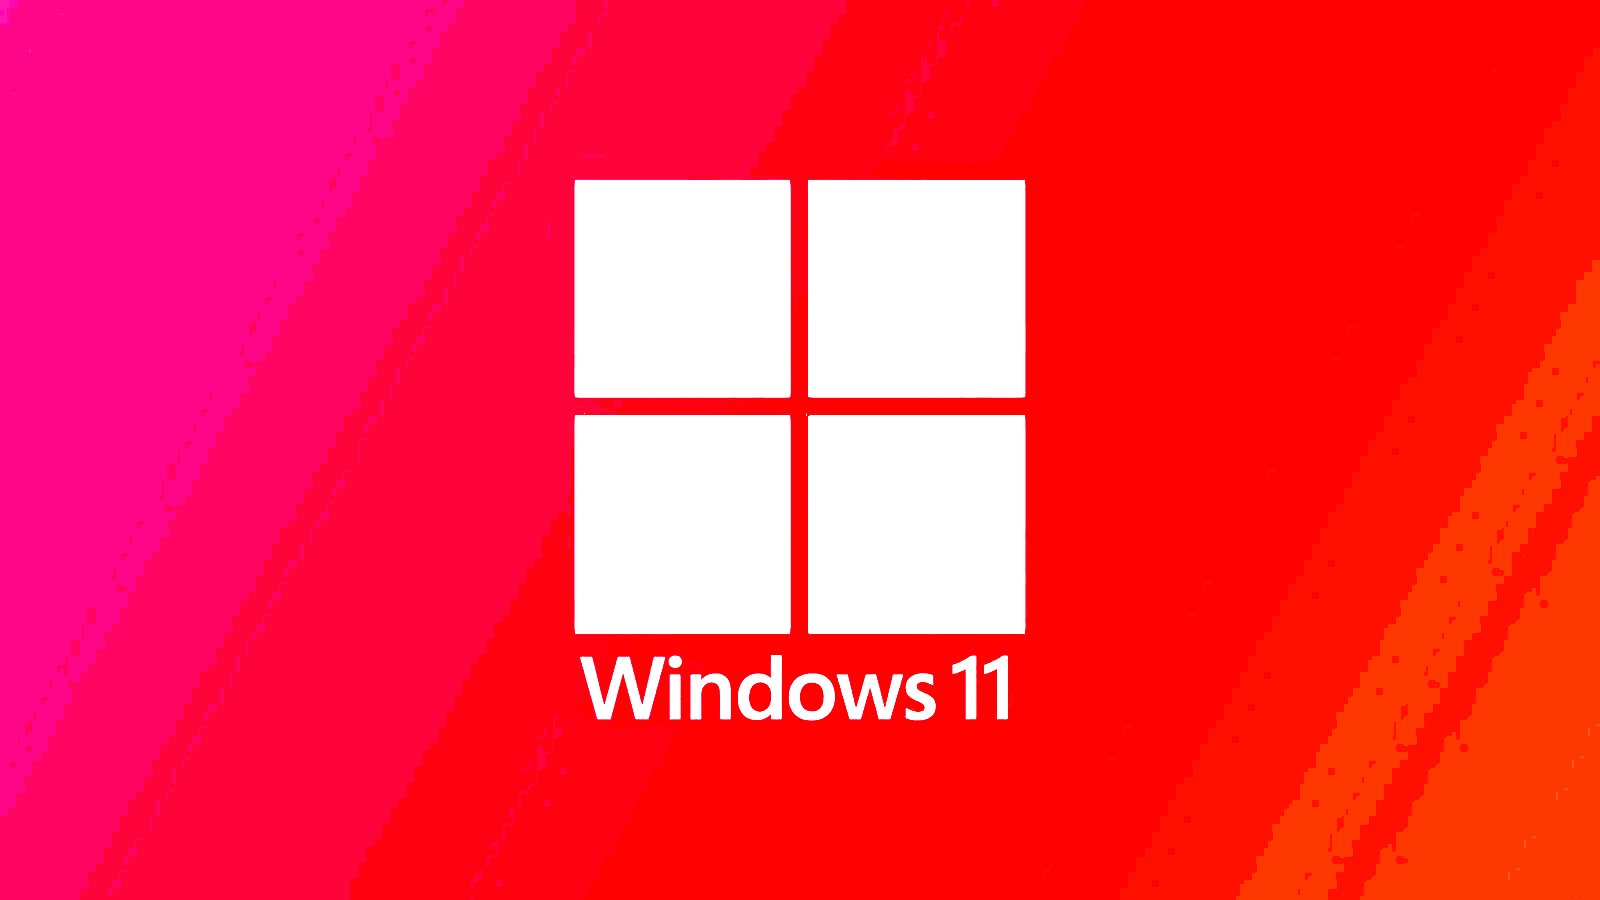 December’s Windows 11 KB5033375 update breaks Wi-Fi connectivity